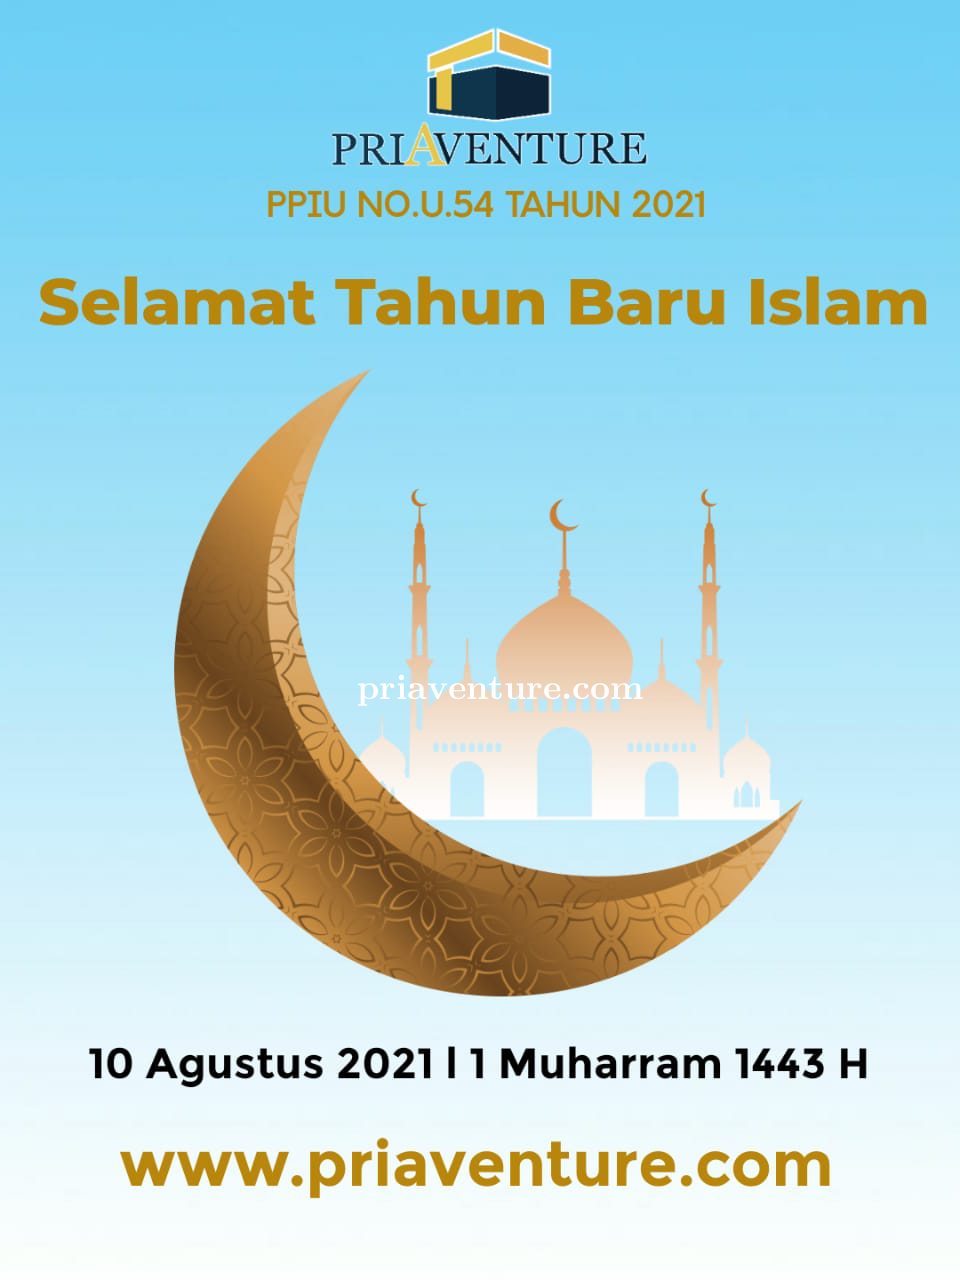 Selamat Tahun Baru Islam 2021 atau 1 Muharram 1443 H 